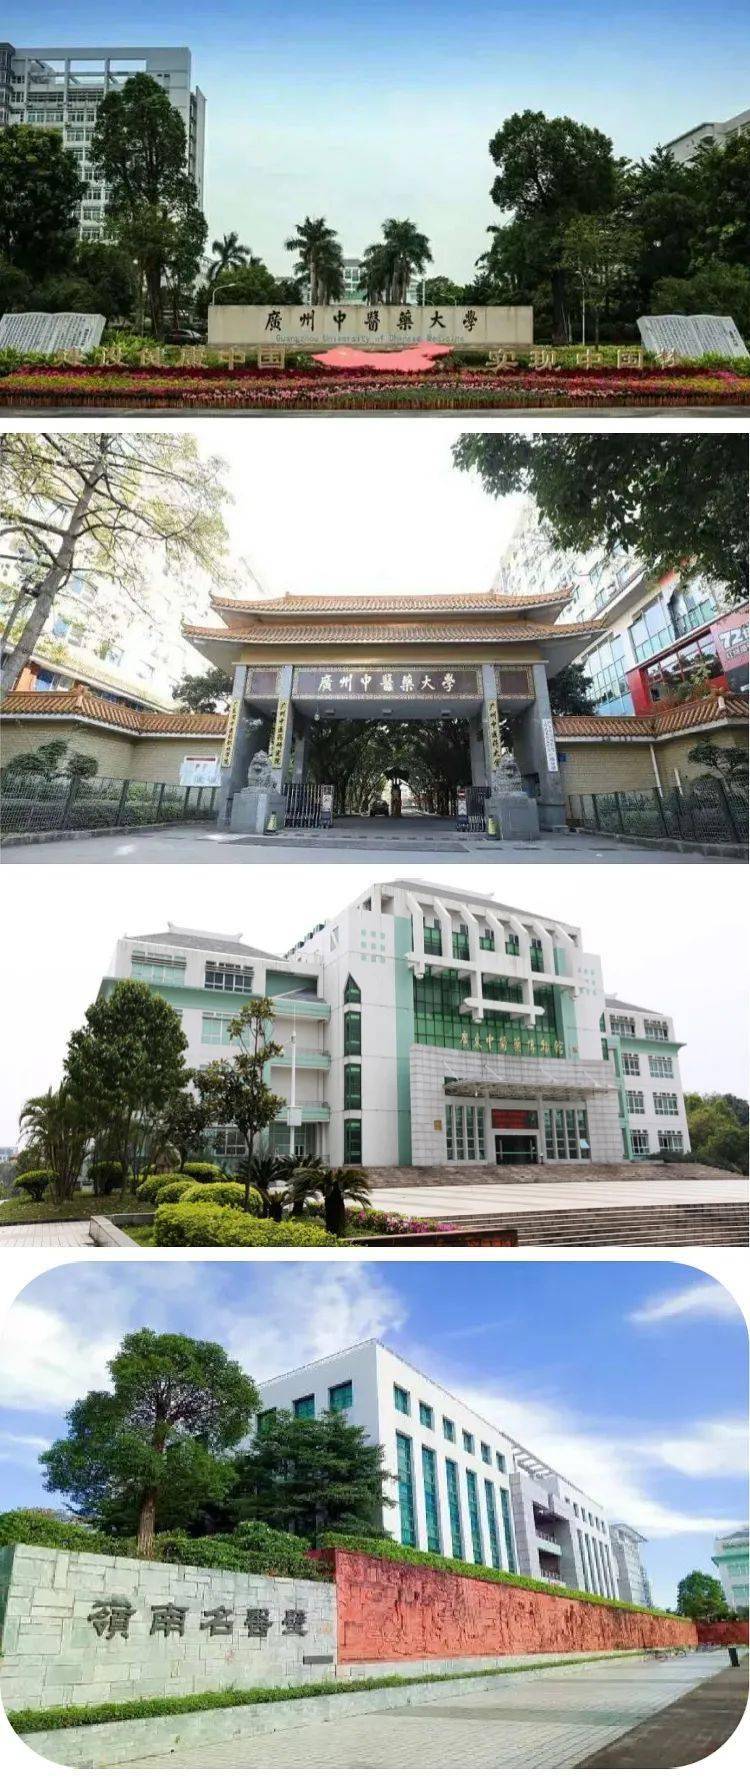 技术学院学校起源于1958年创办的佛山师范学院和华南农学院佛山分院